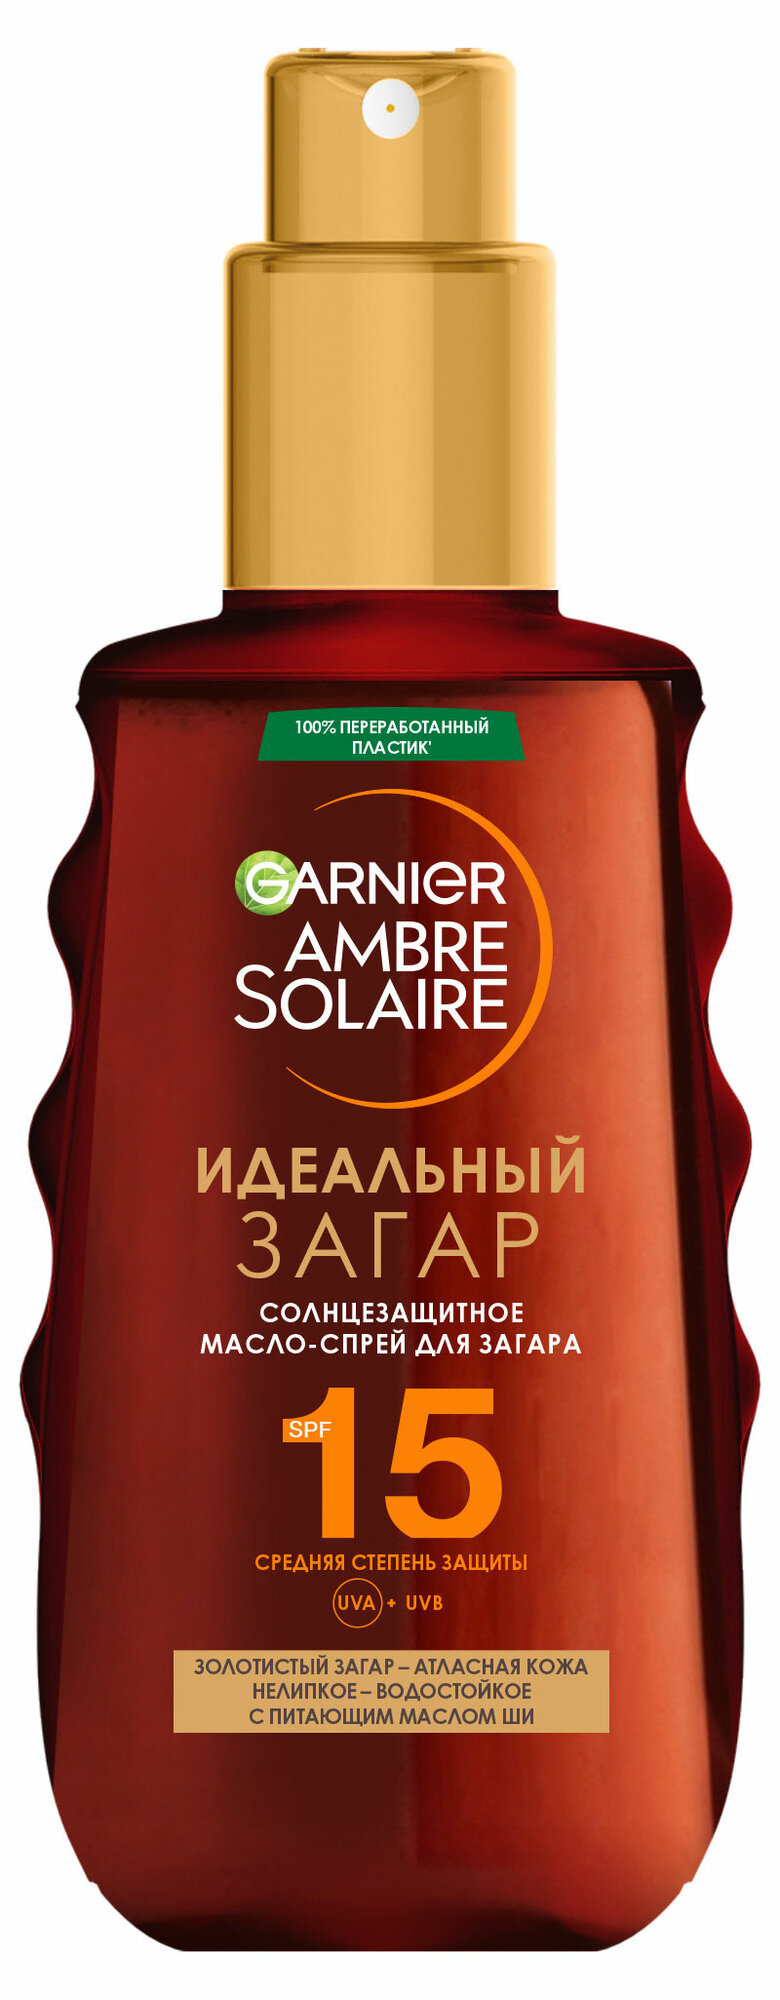 Масло-спрей для загара Garnier Ambre Solaire, 150 мл